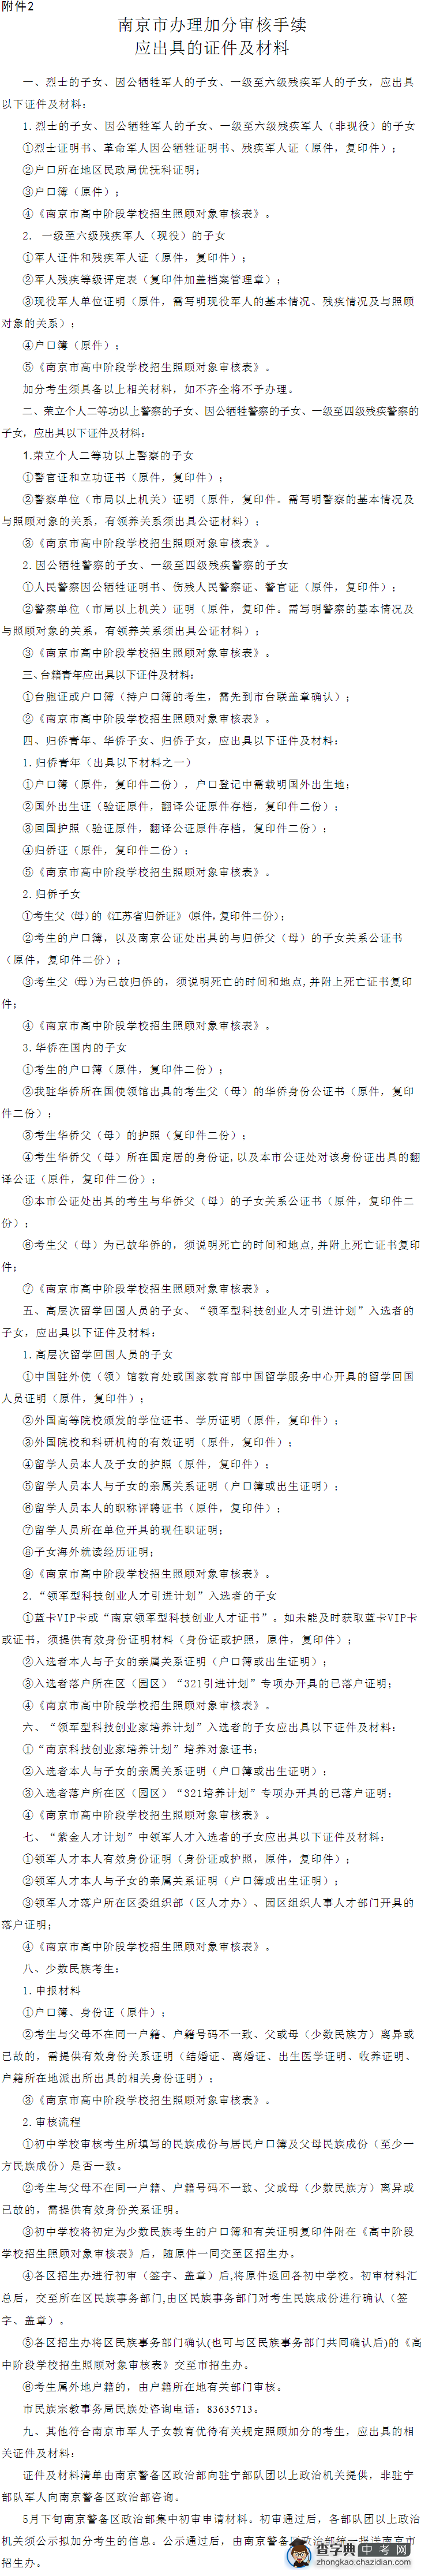 南京市办理加分审核手续应出具的证件及材料1